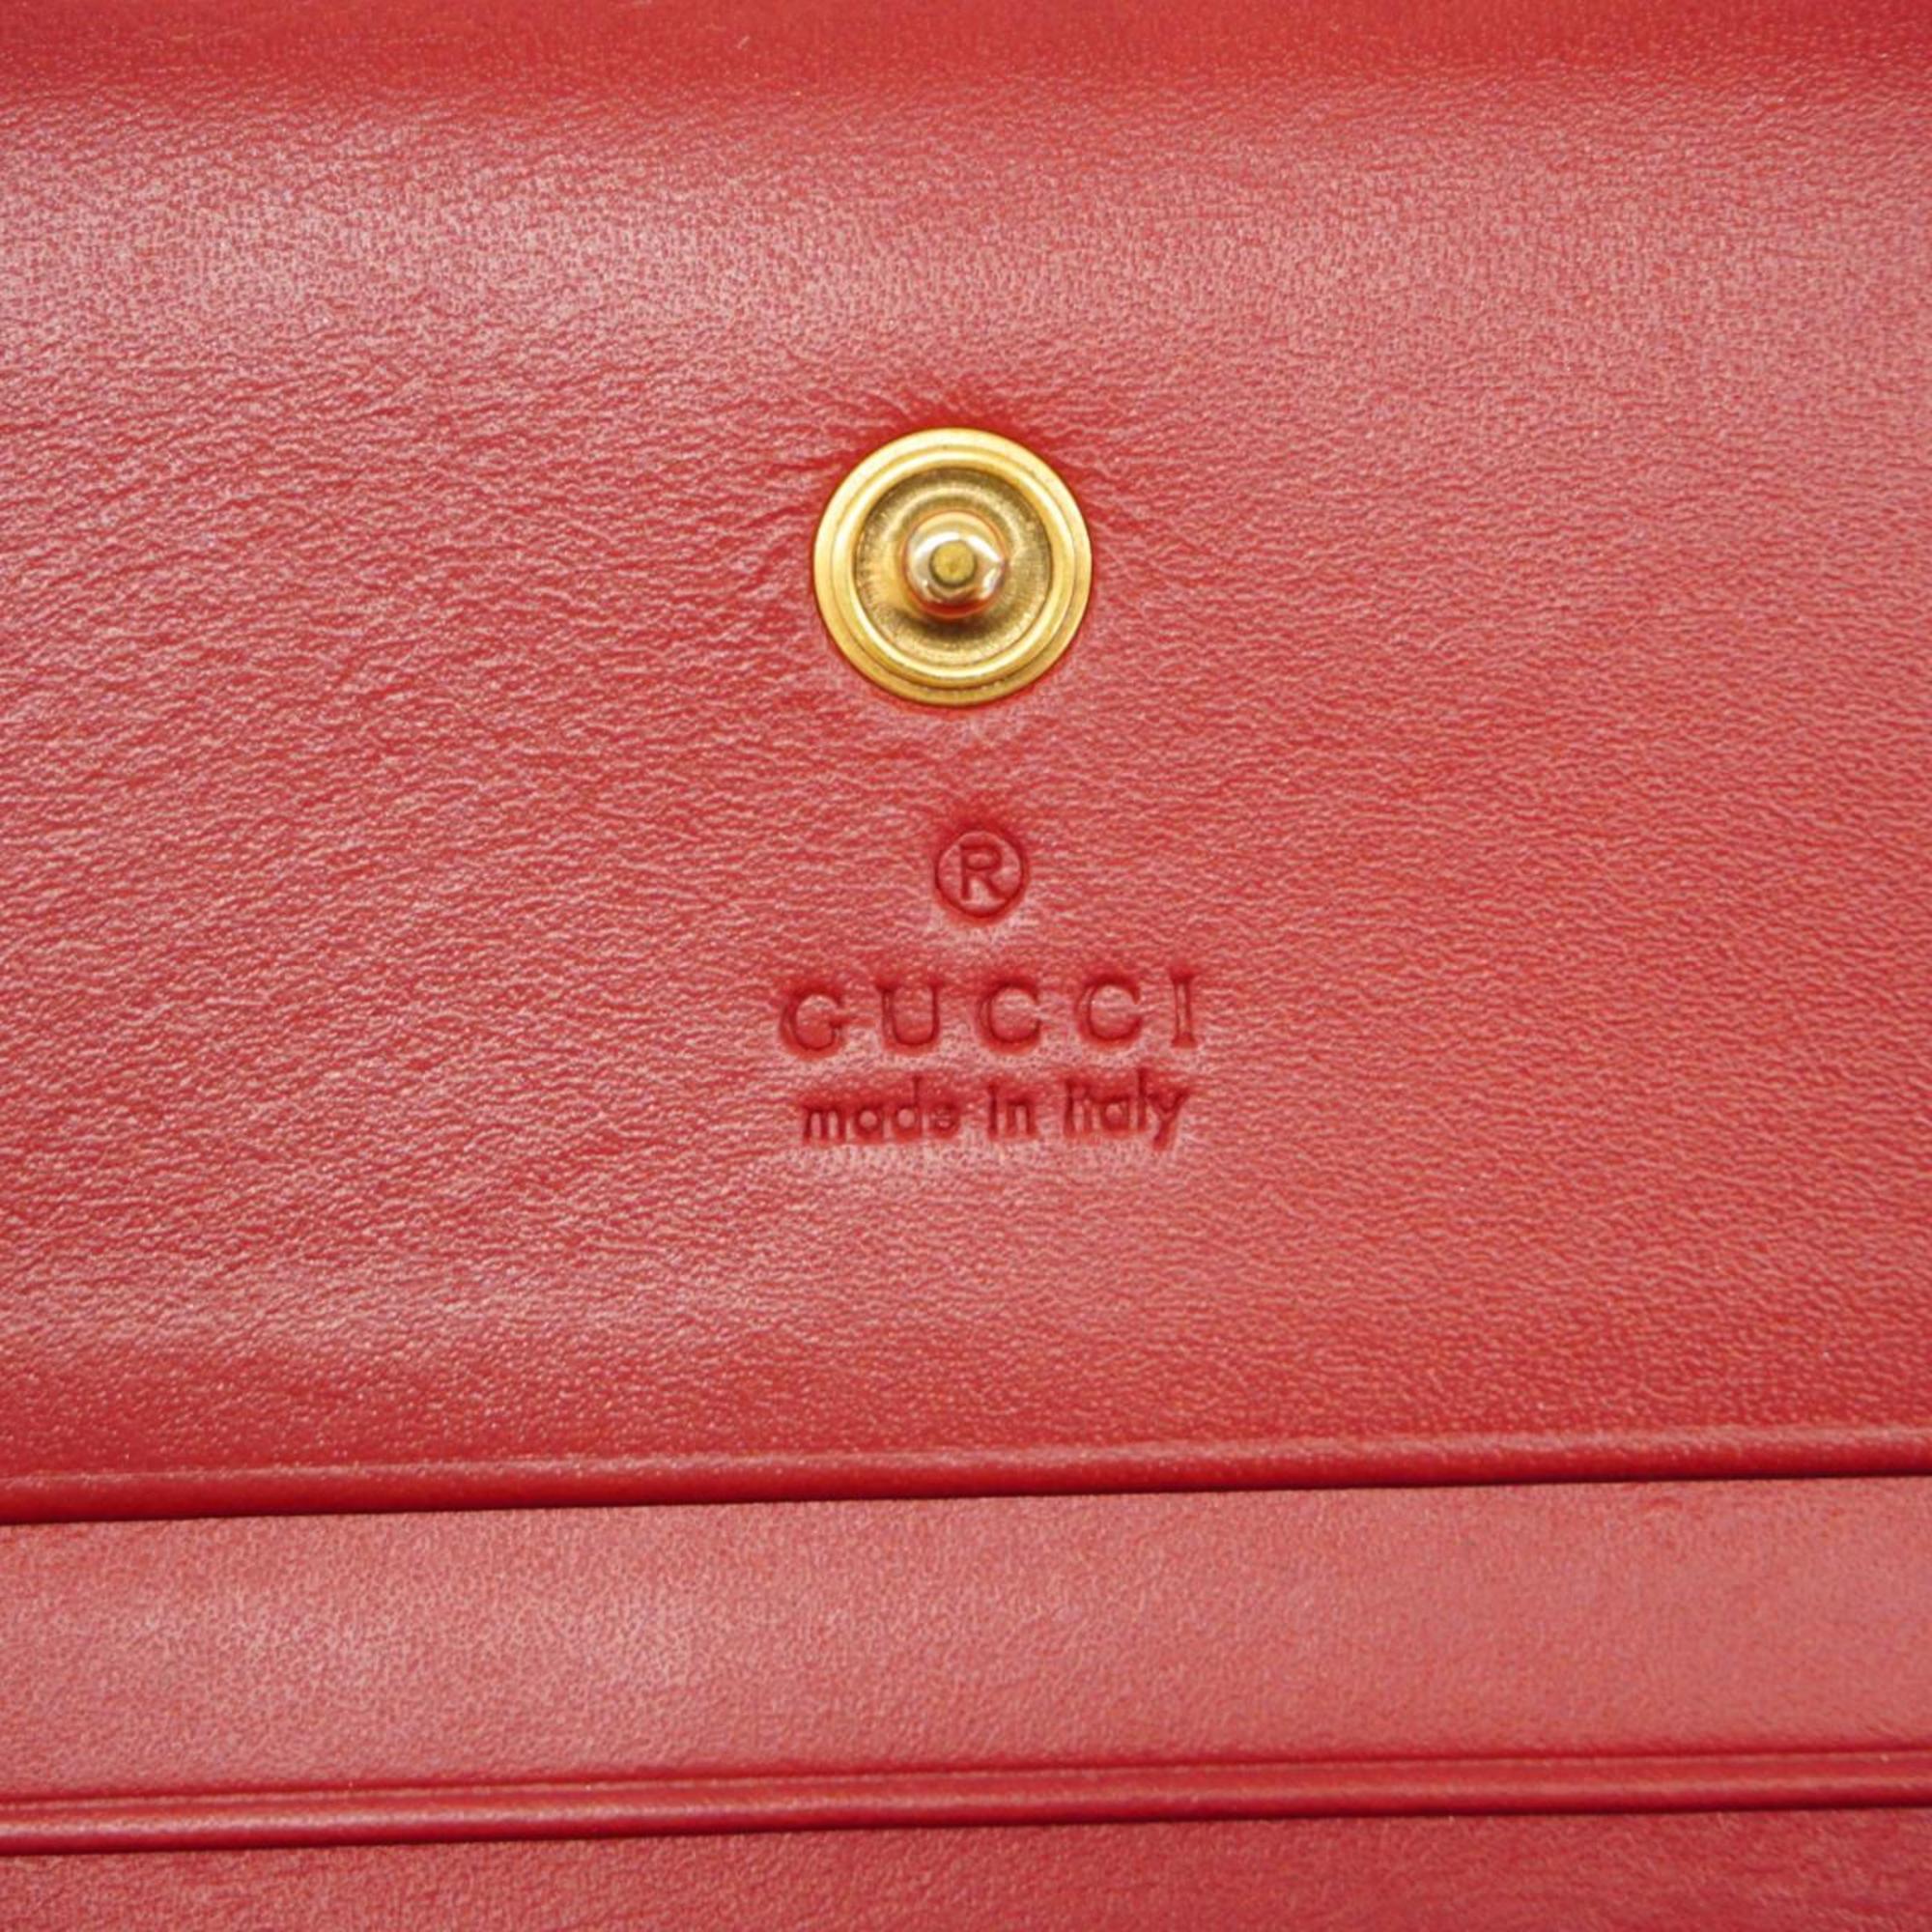 グッチ(Gucci) グッチ 財布 GGスプリーム チェリー 476050  ブラウン レッド   レディース